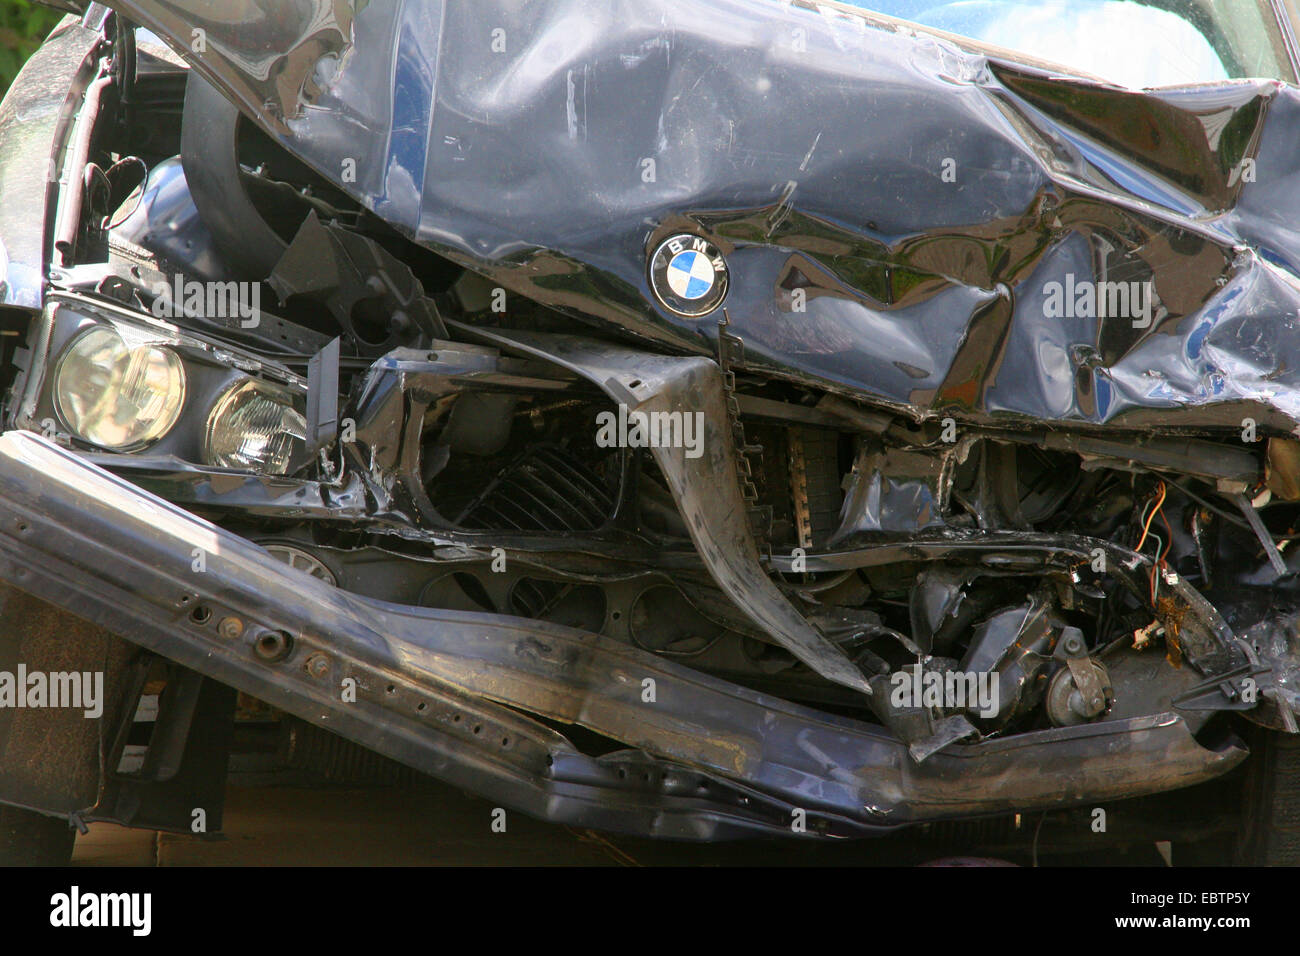 crashed vehicle, Germany, North Rhine-Westphalia Stock Photo